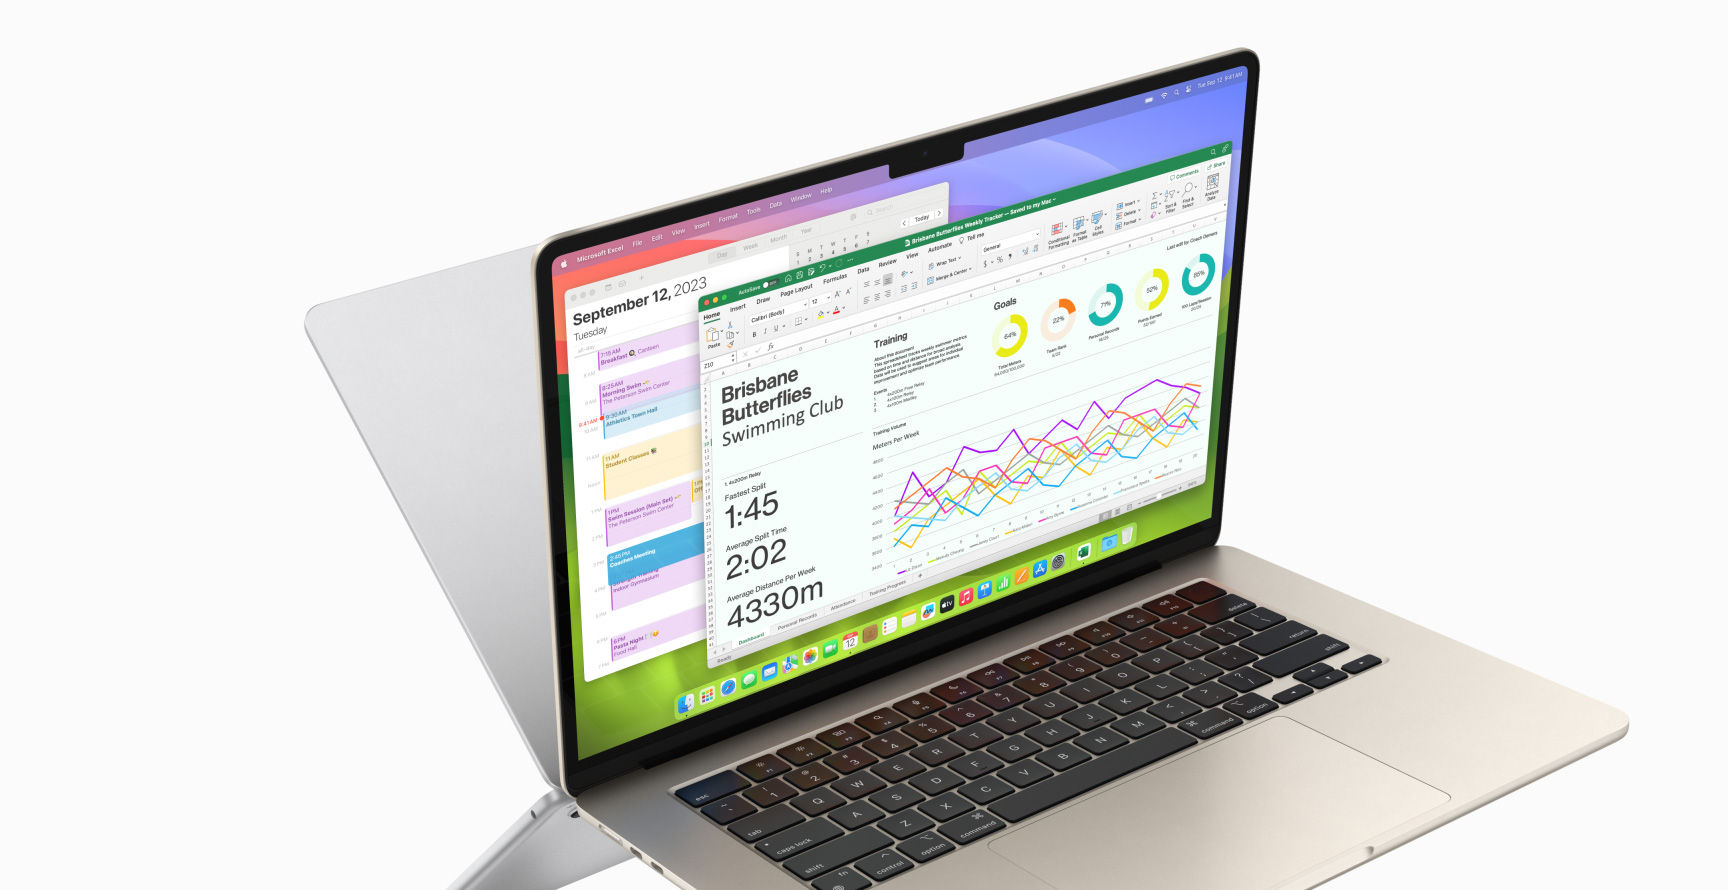 MacBook Air; Takvim ve Microsoft Excel uygulamalarını çalıştırırken gösteriliyor.